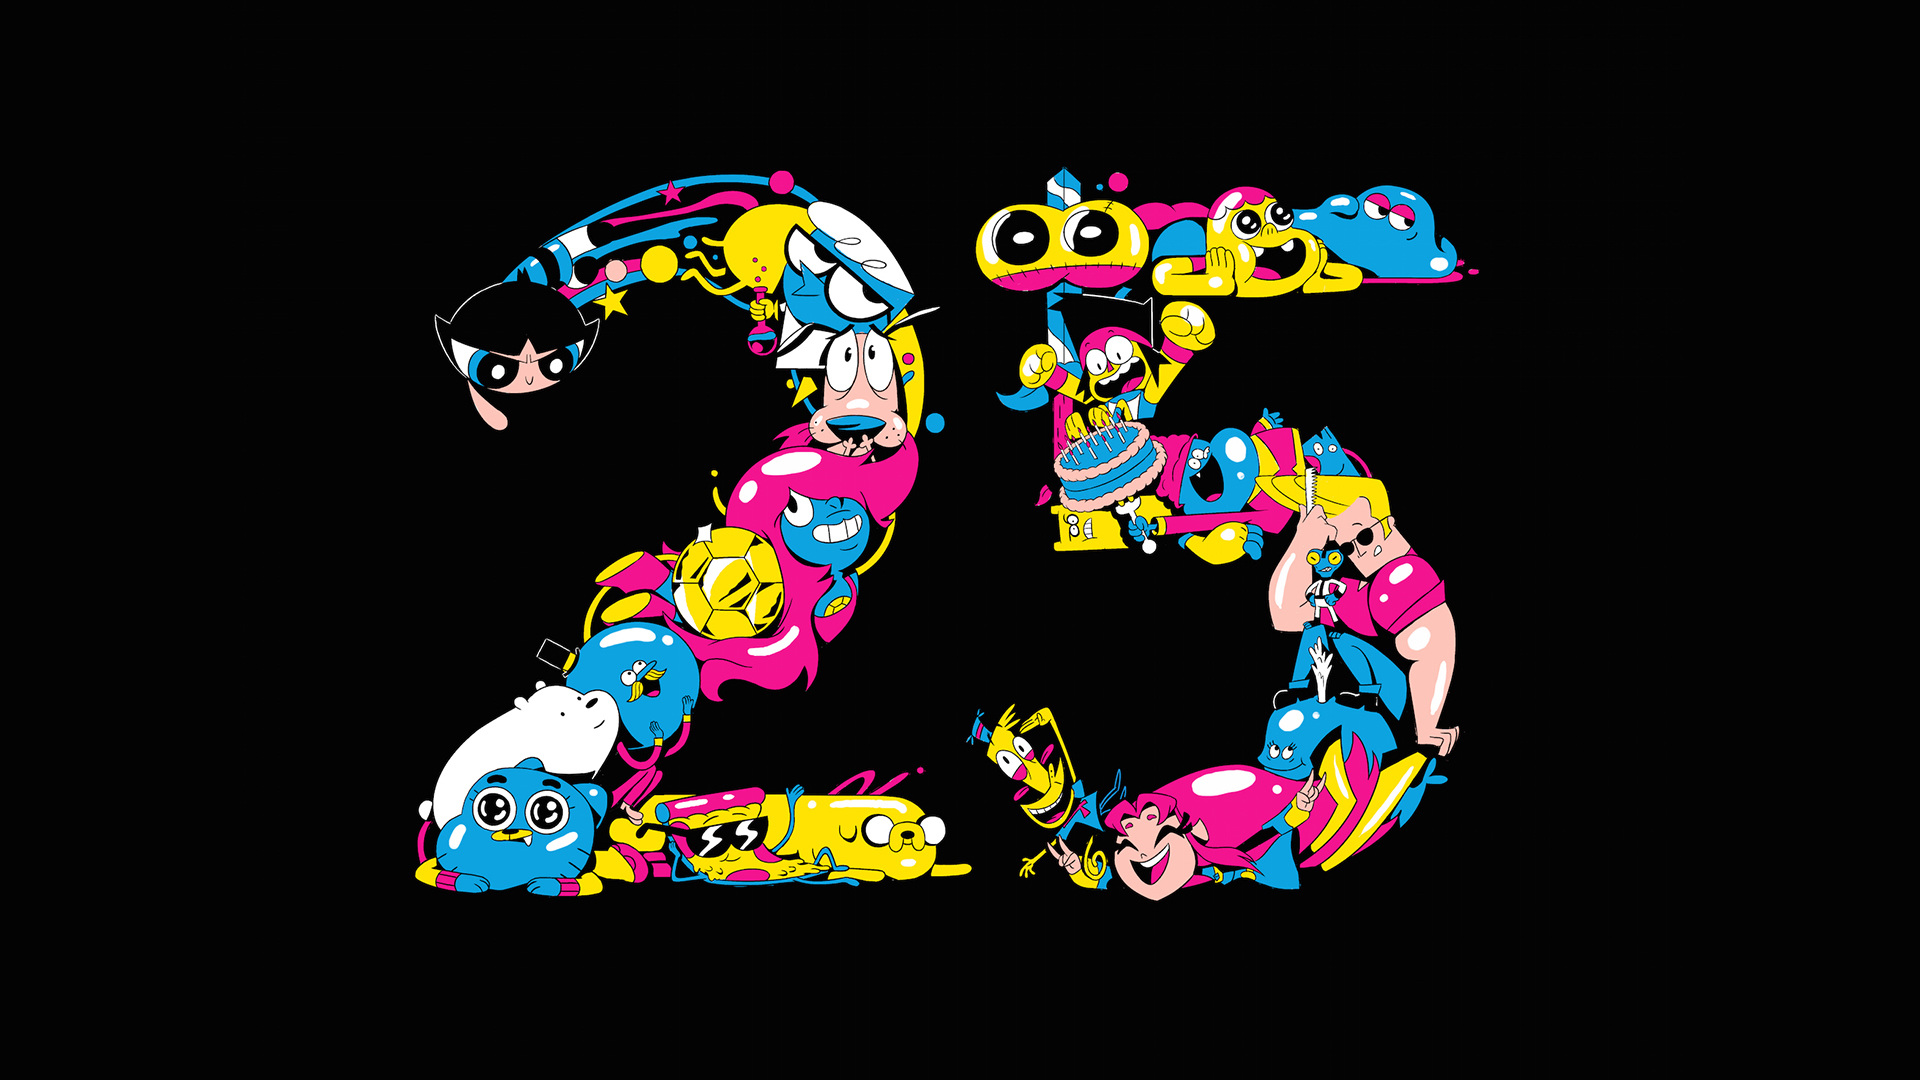 Cartoon Network 25th anniversary | STASH MAGAZINE